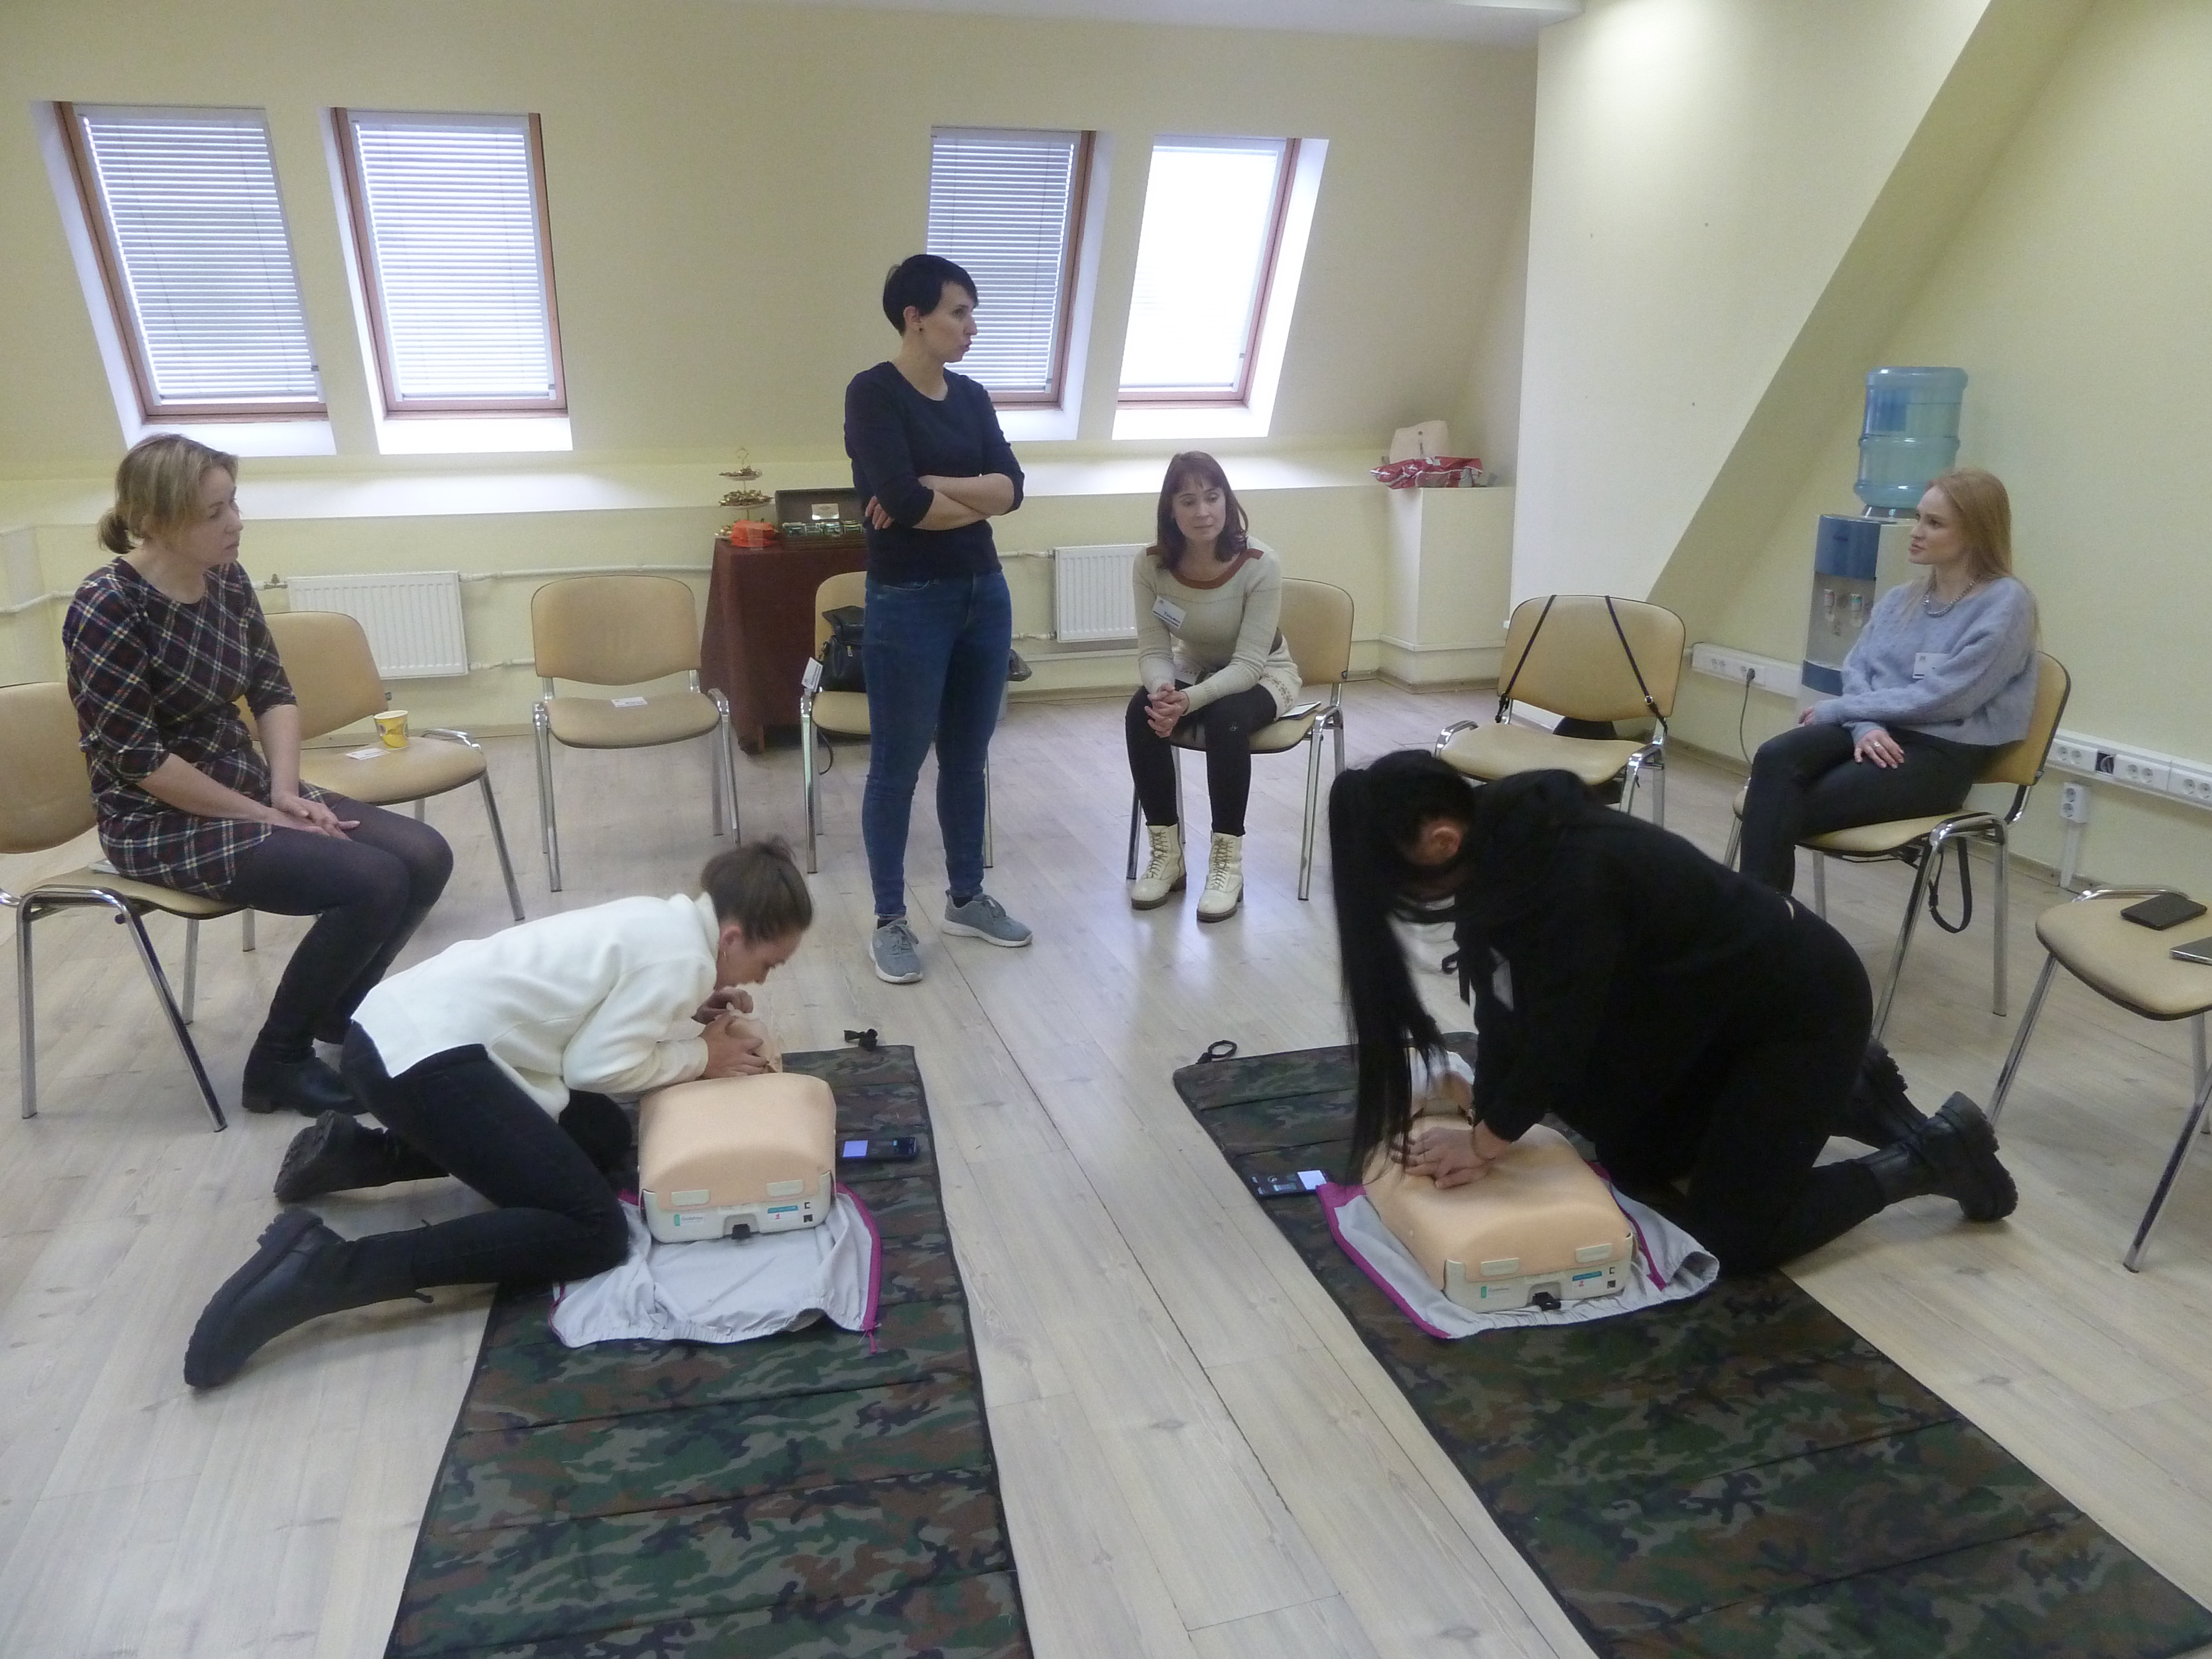 19 февраля 21 года прошло обучение по теме "Оказание первой помощи. Оказание доврачебной помощи"